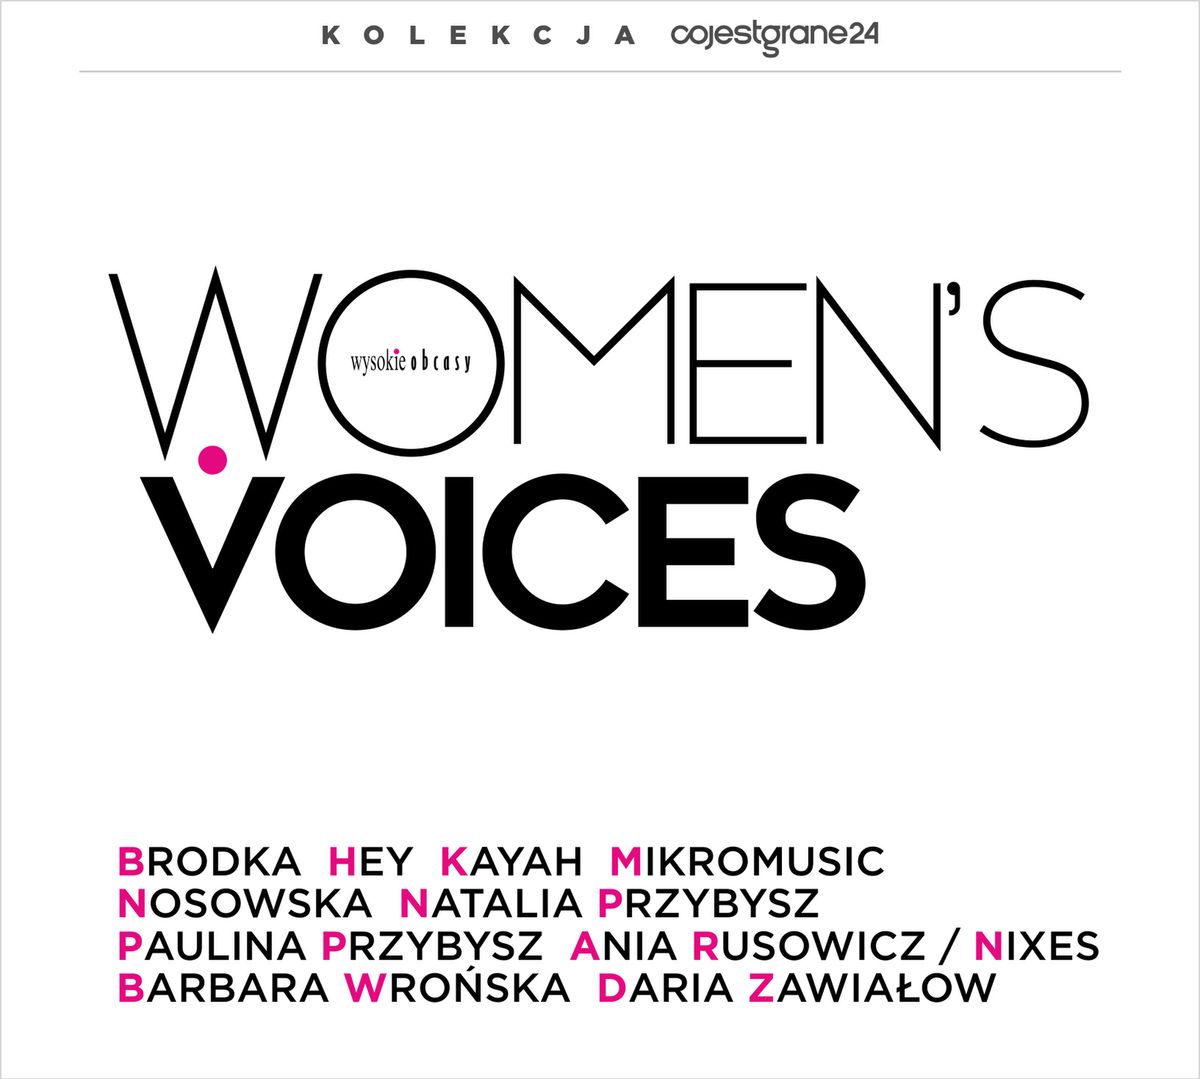 "Women's voices" - utwory kobiecych gwiazd polskiej sceny muzycznej na jednej płycie